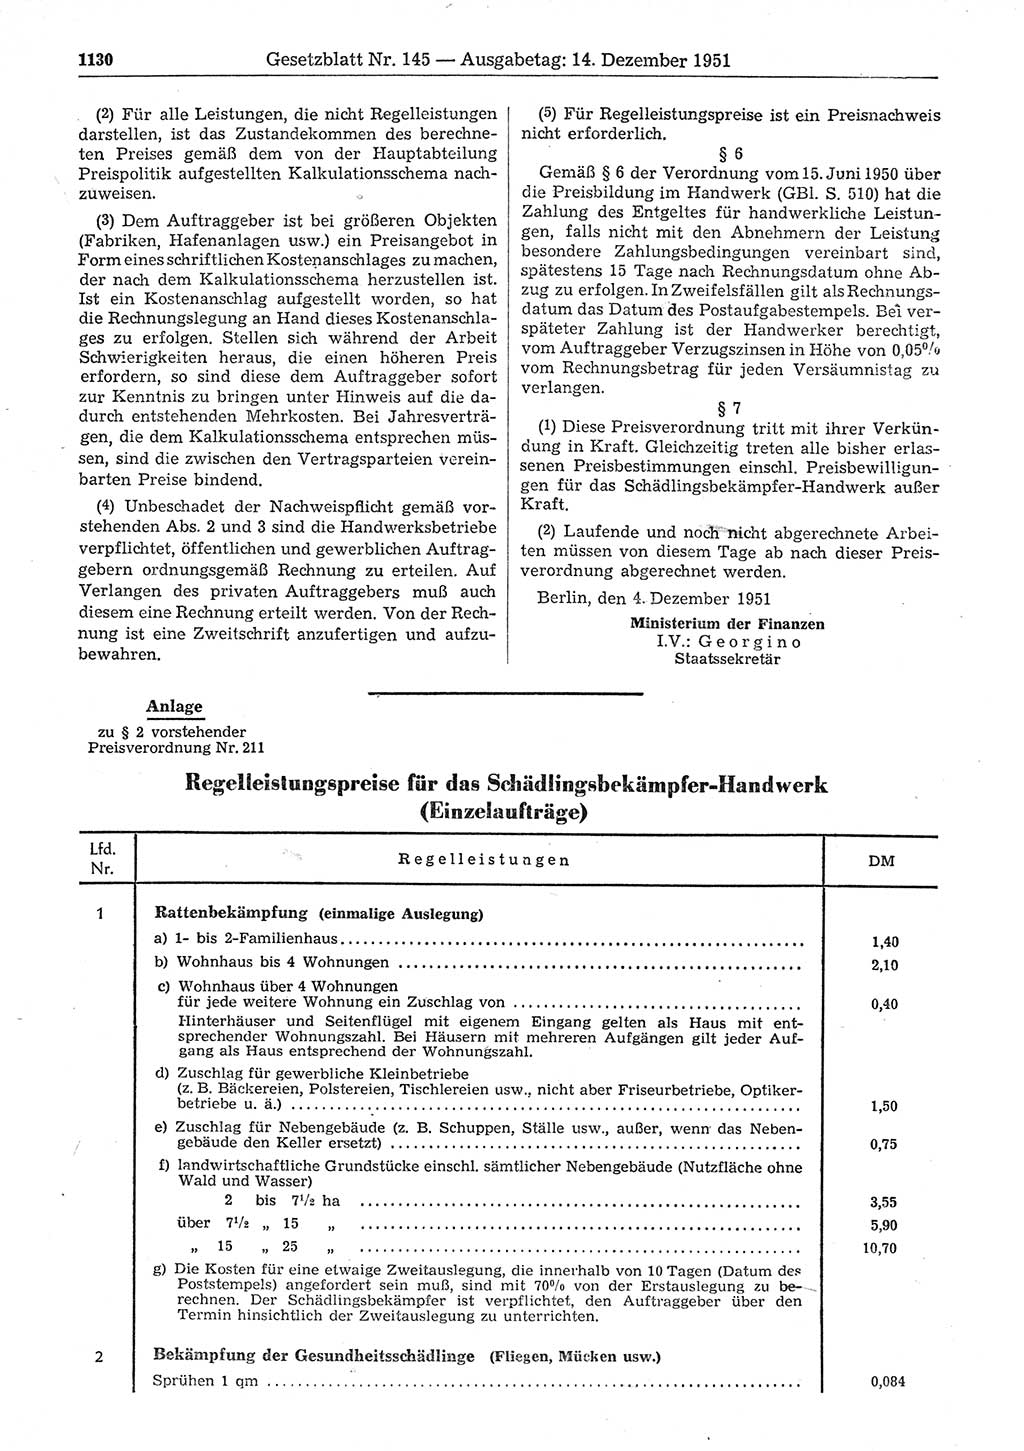 Gesetzblatt (GBl.) der Deutschen Demokratischen Republik (DDR) 1951, Seite 1130 (GBl. DDR 1951, S. 1130)